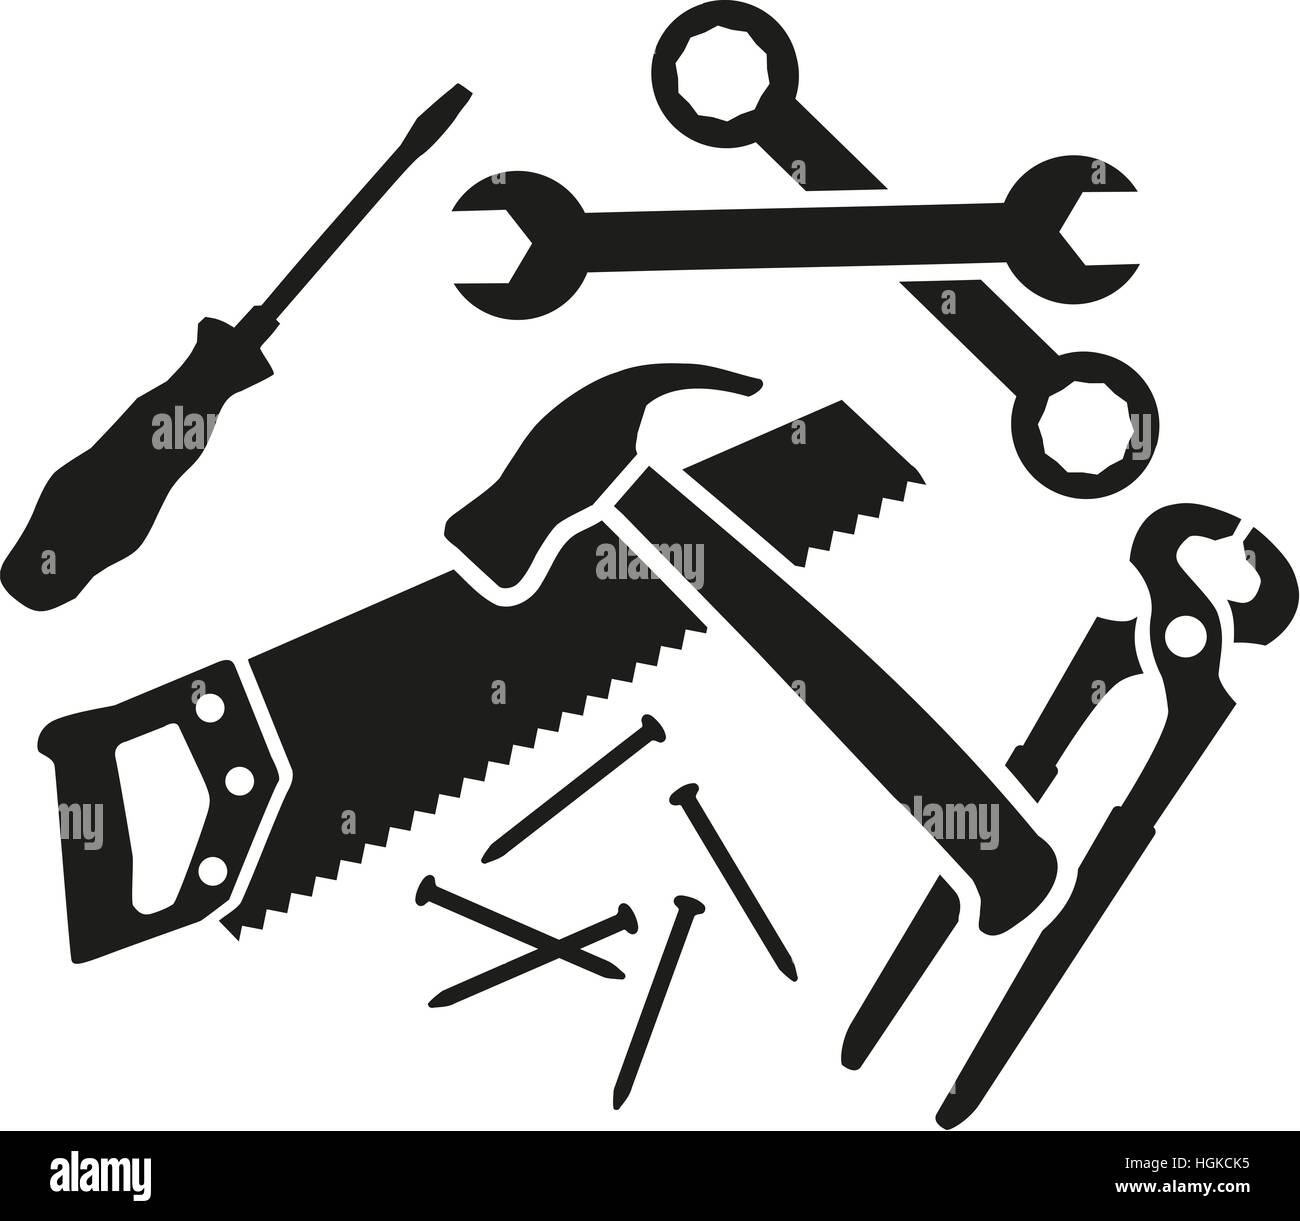 Chaos von Arbeitswerkzeugen - Schraubendreher, Schraubenschlüssel, Hammer, Säge, Zange, Nägel Stockfoto